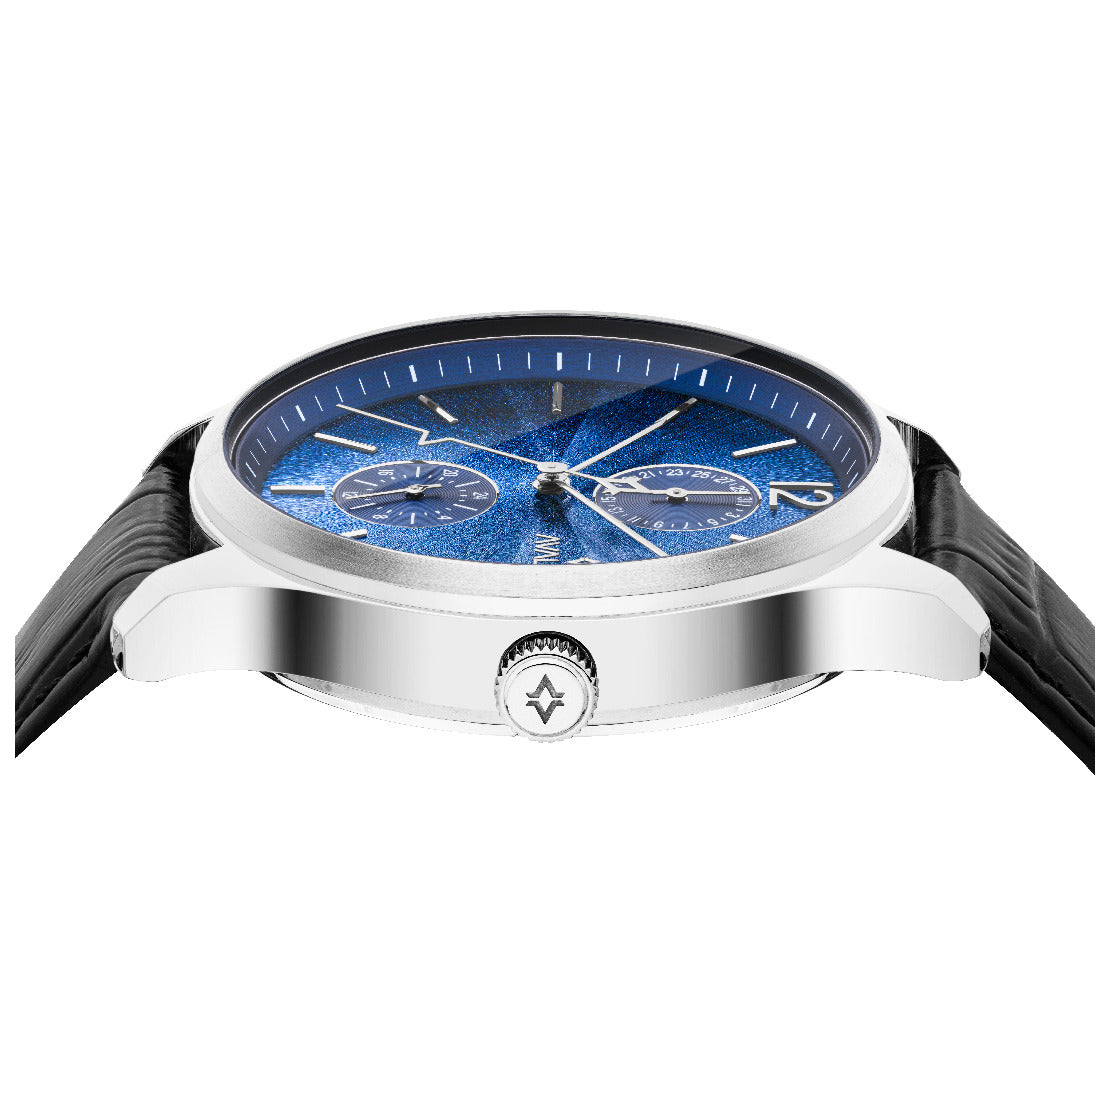 Avalieri Men's Quartz Blue Dial Watch - AV-2470B